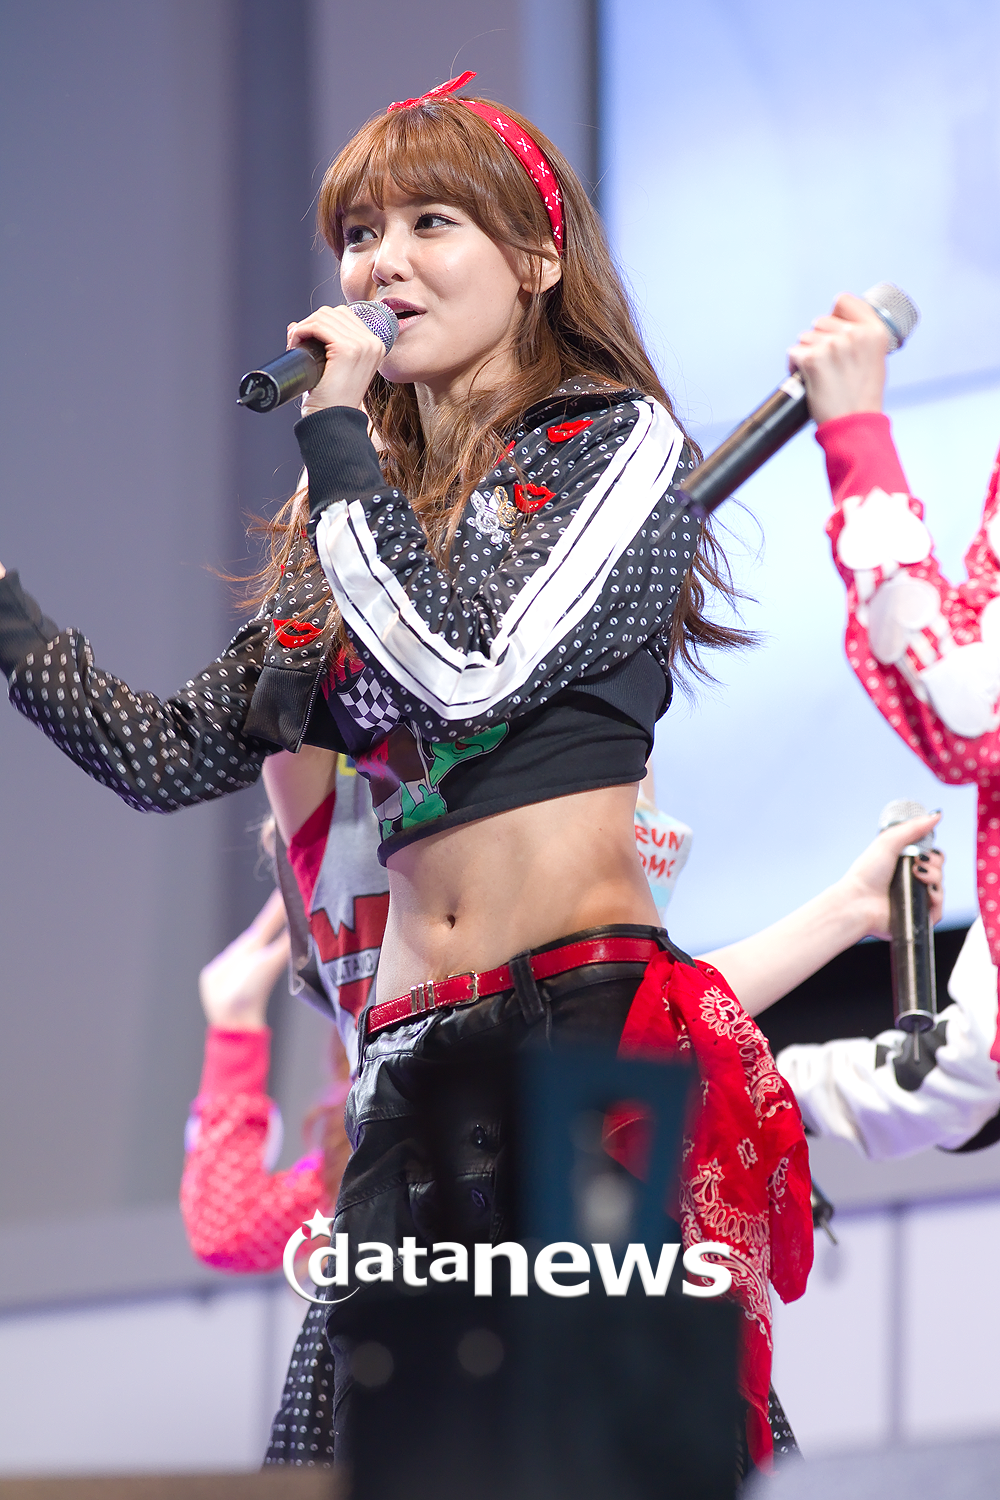 [PIC][07-04-2013]SNSD biểu diễn tại "LG Cinema 3D Festival" ở Lotte World vào tối nay - Page 3 2116BD3D51626A93171E52